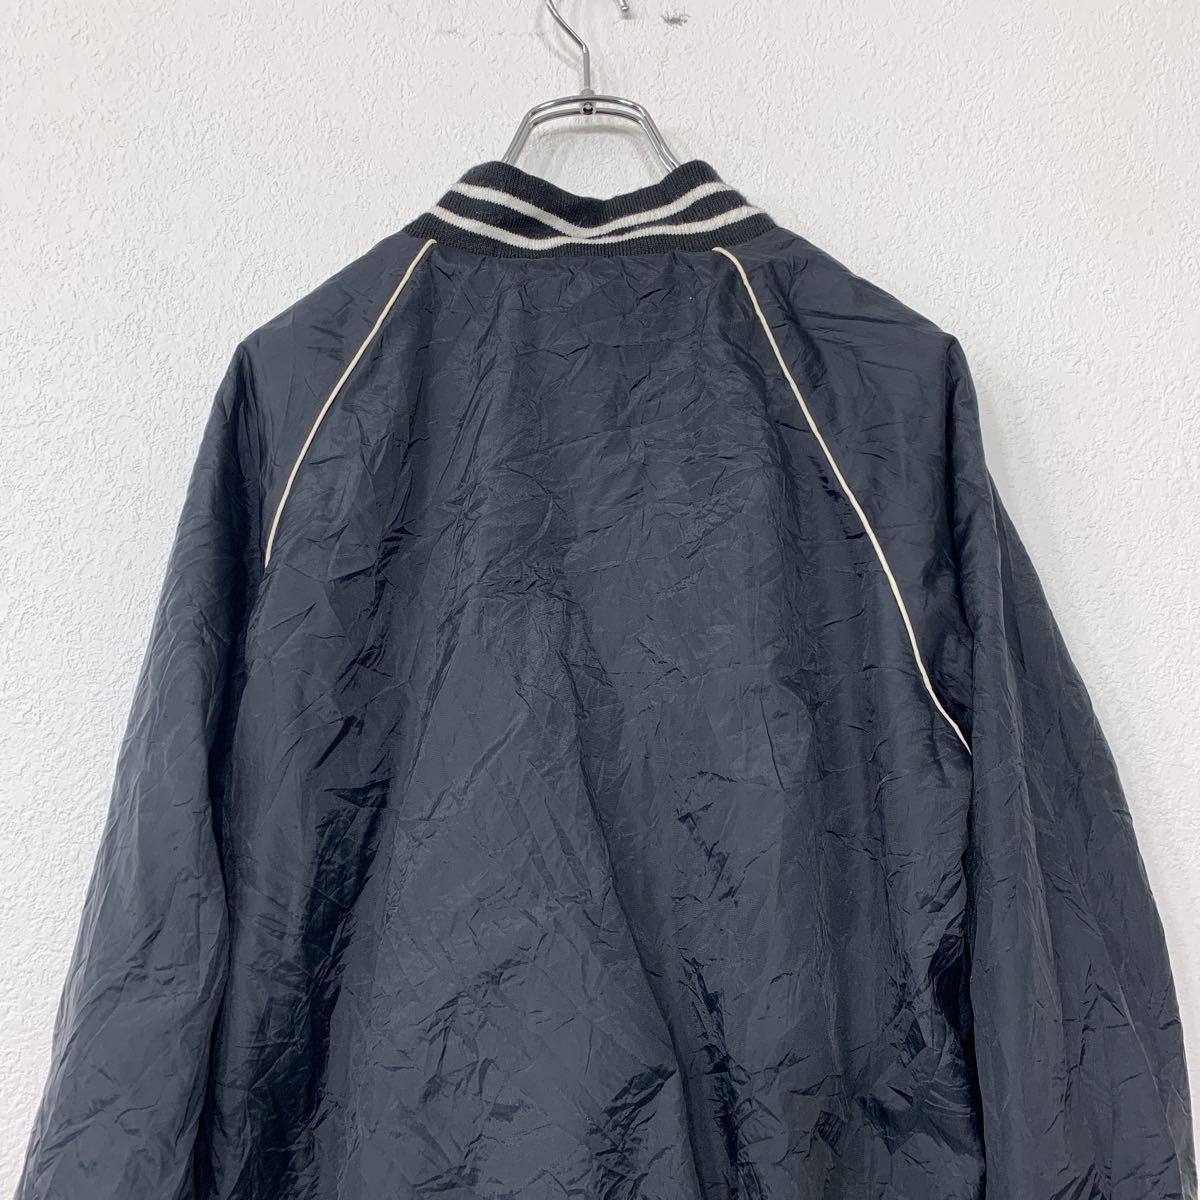 Repage нейлон куртка M размер куртка с логотипом черный б/у одежда . America скупка t2111-3331